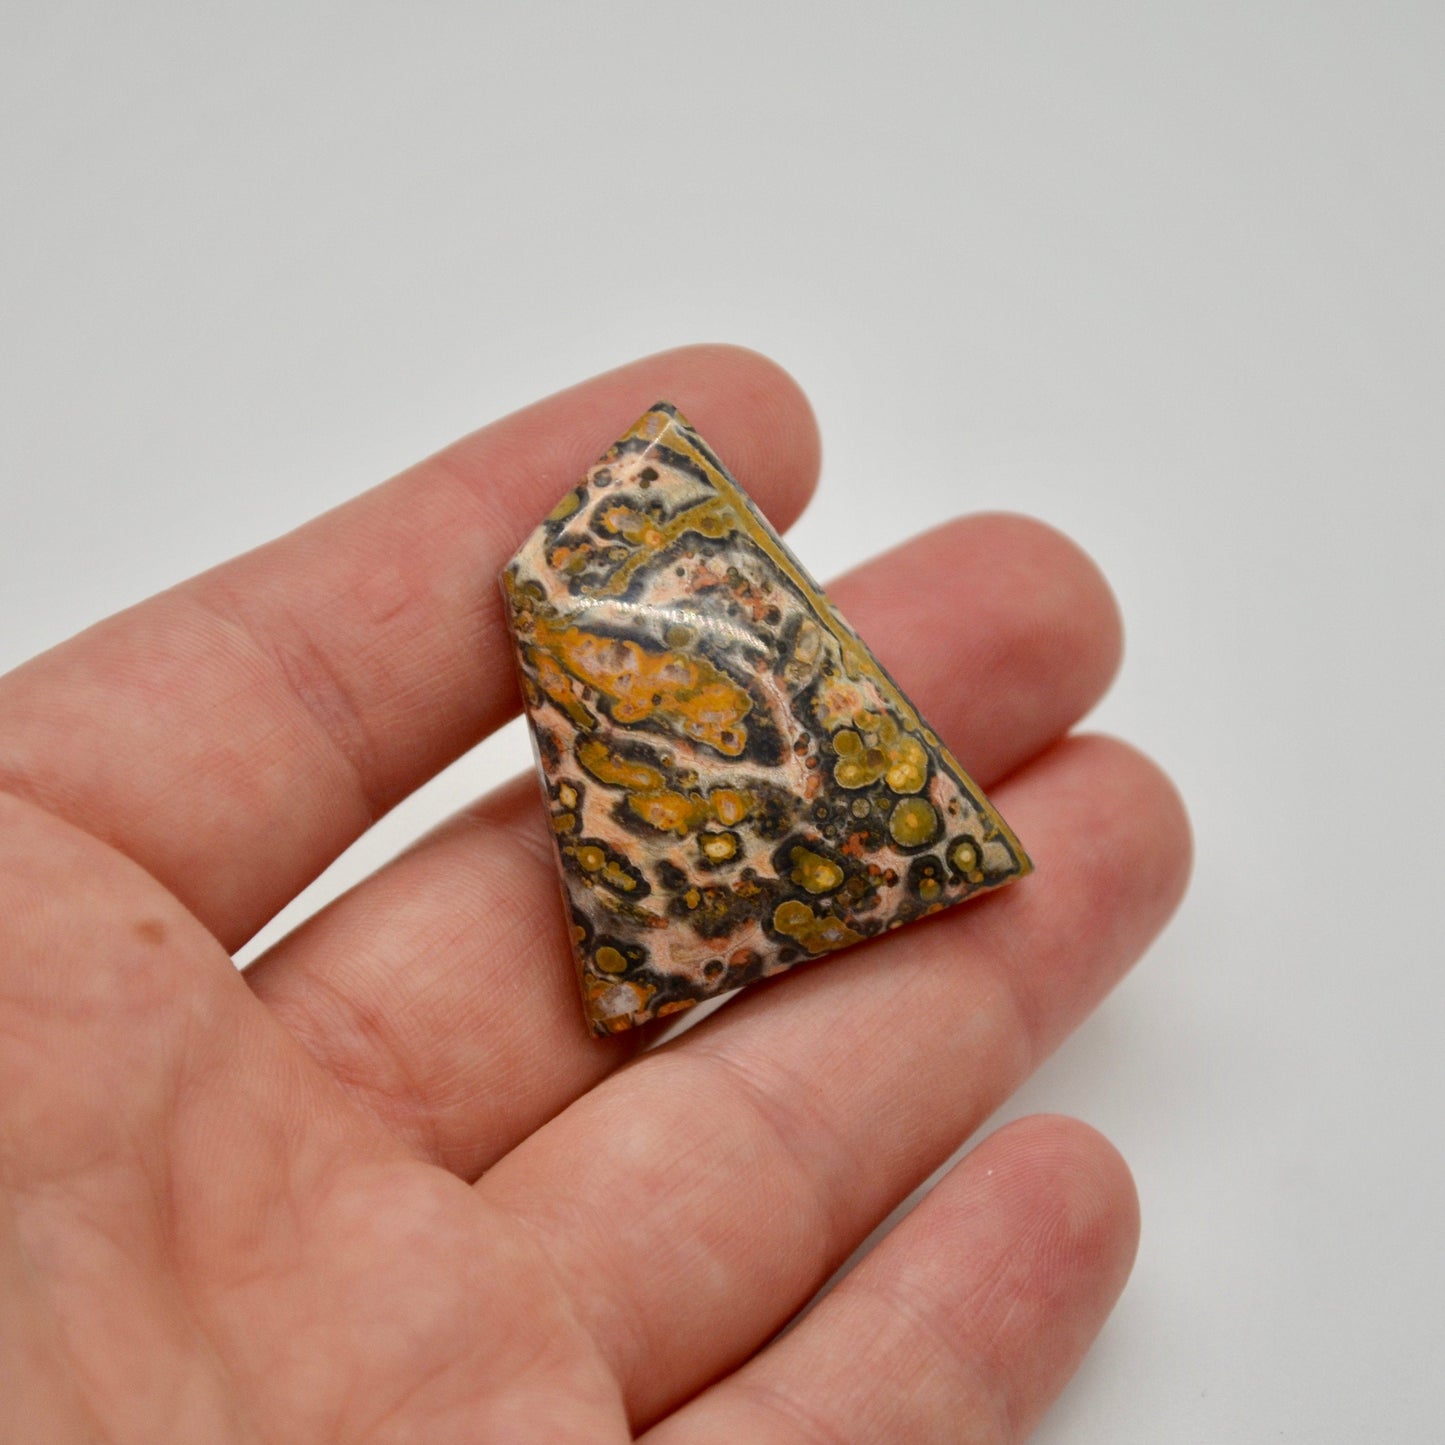 Leopard Skin Jasper Cabochon - 50 carats (37.0 mm x 28.0 mm)